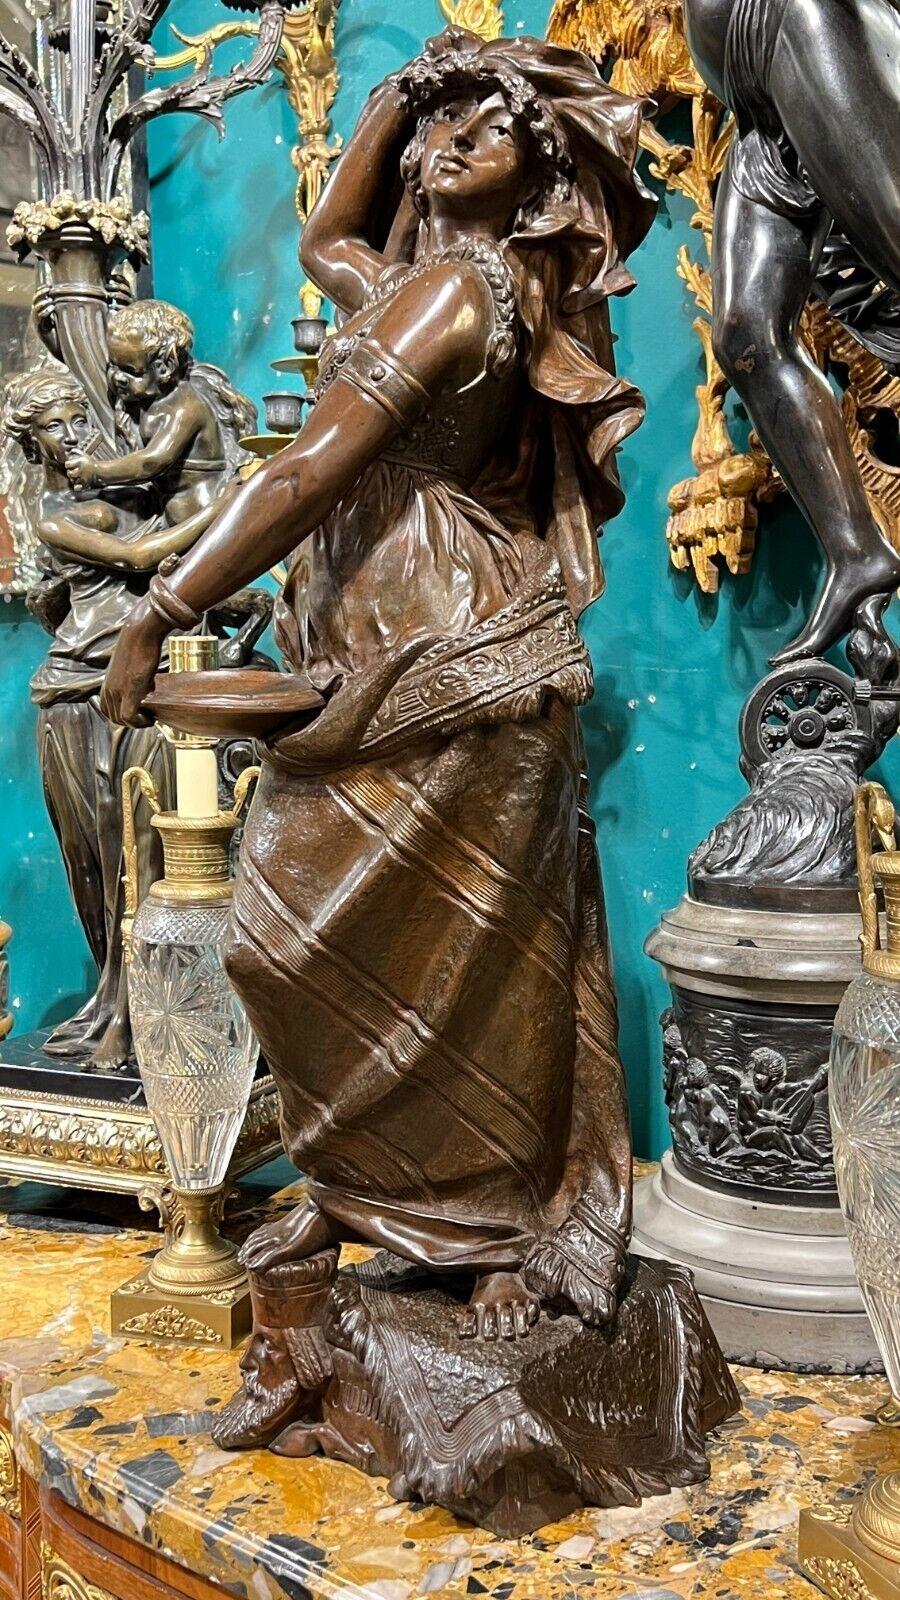 Sujet orientaliste de qualité supérieure  Sculpture de Judith en bronze patiné d'après l'artiste allemand Henry Weiss.